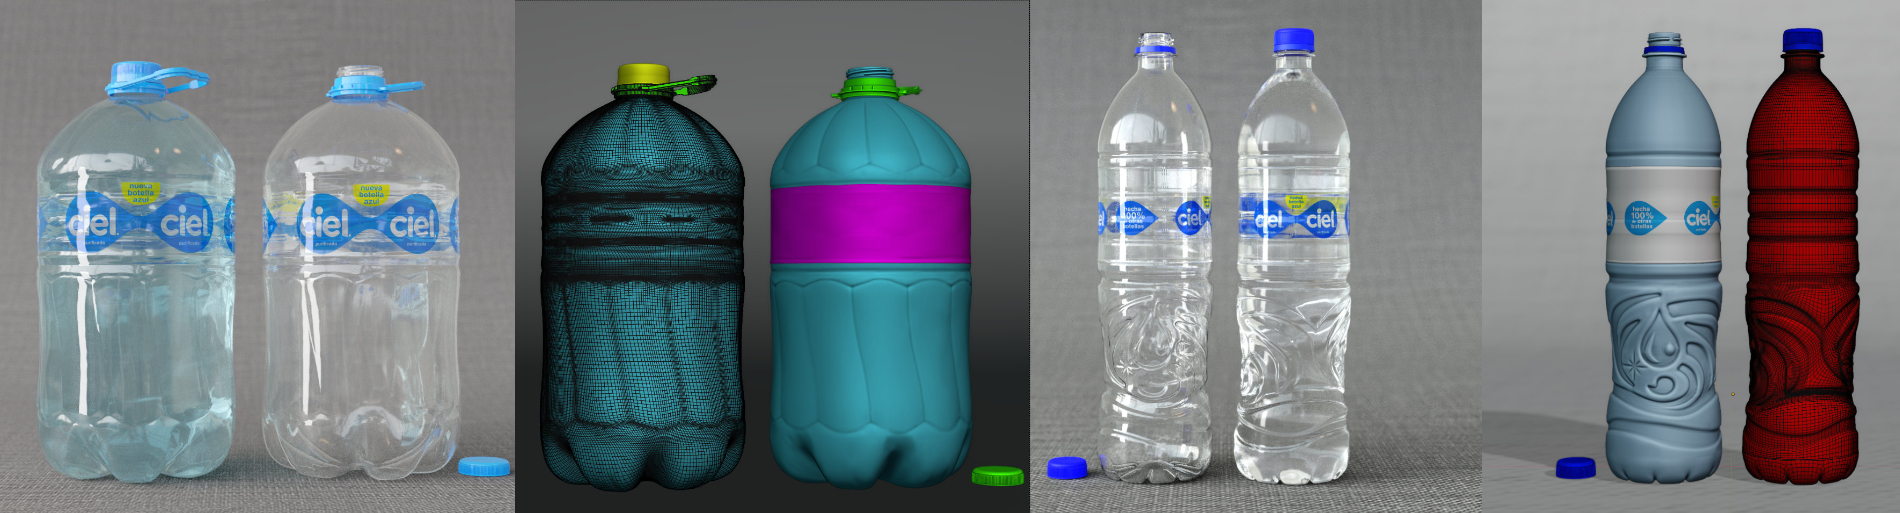 retopolized models of waterbottles with renderings